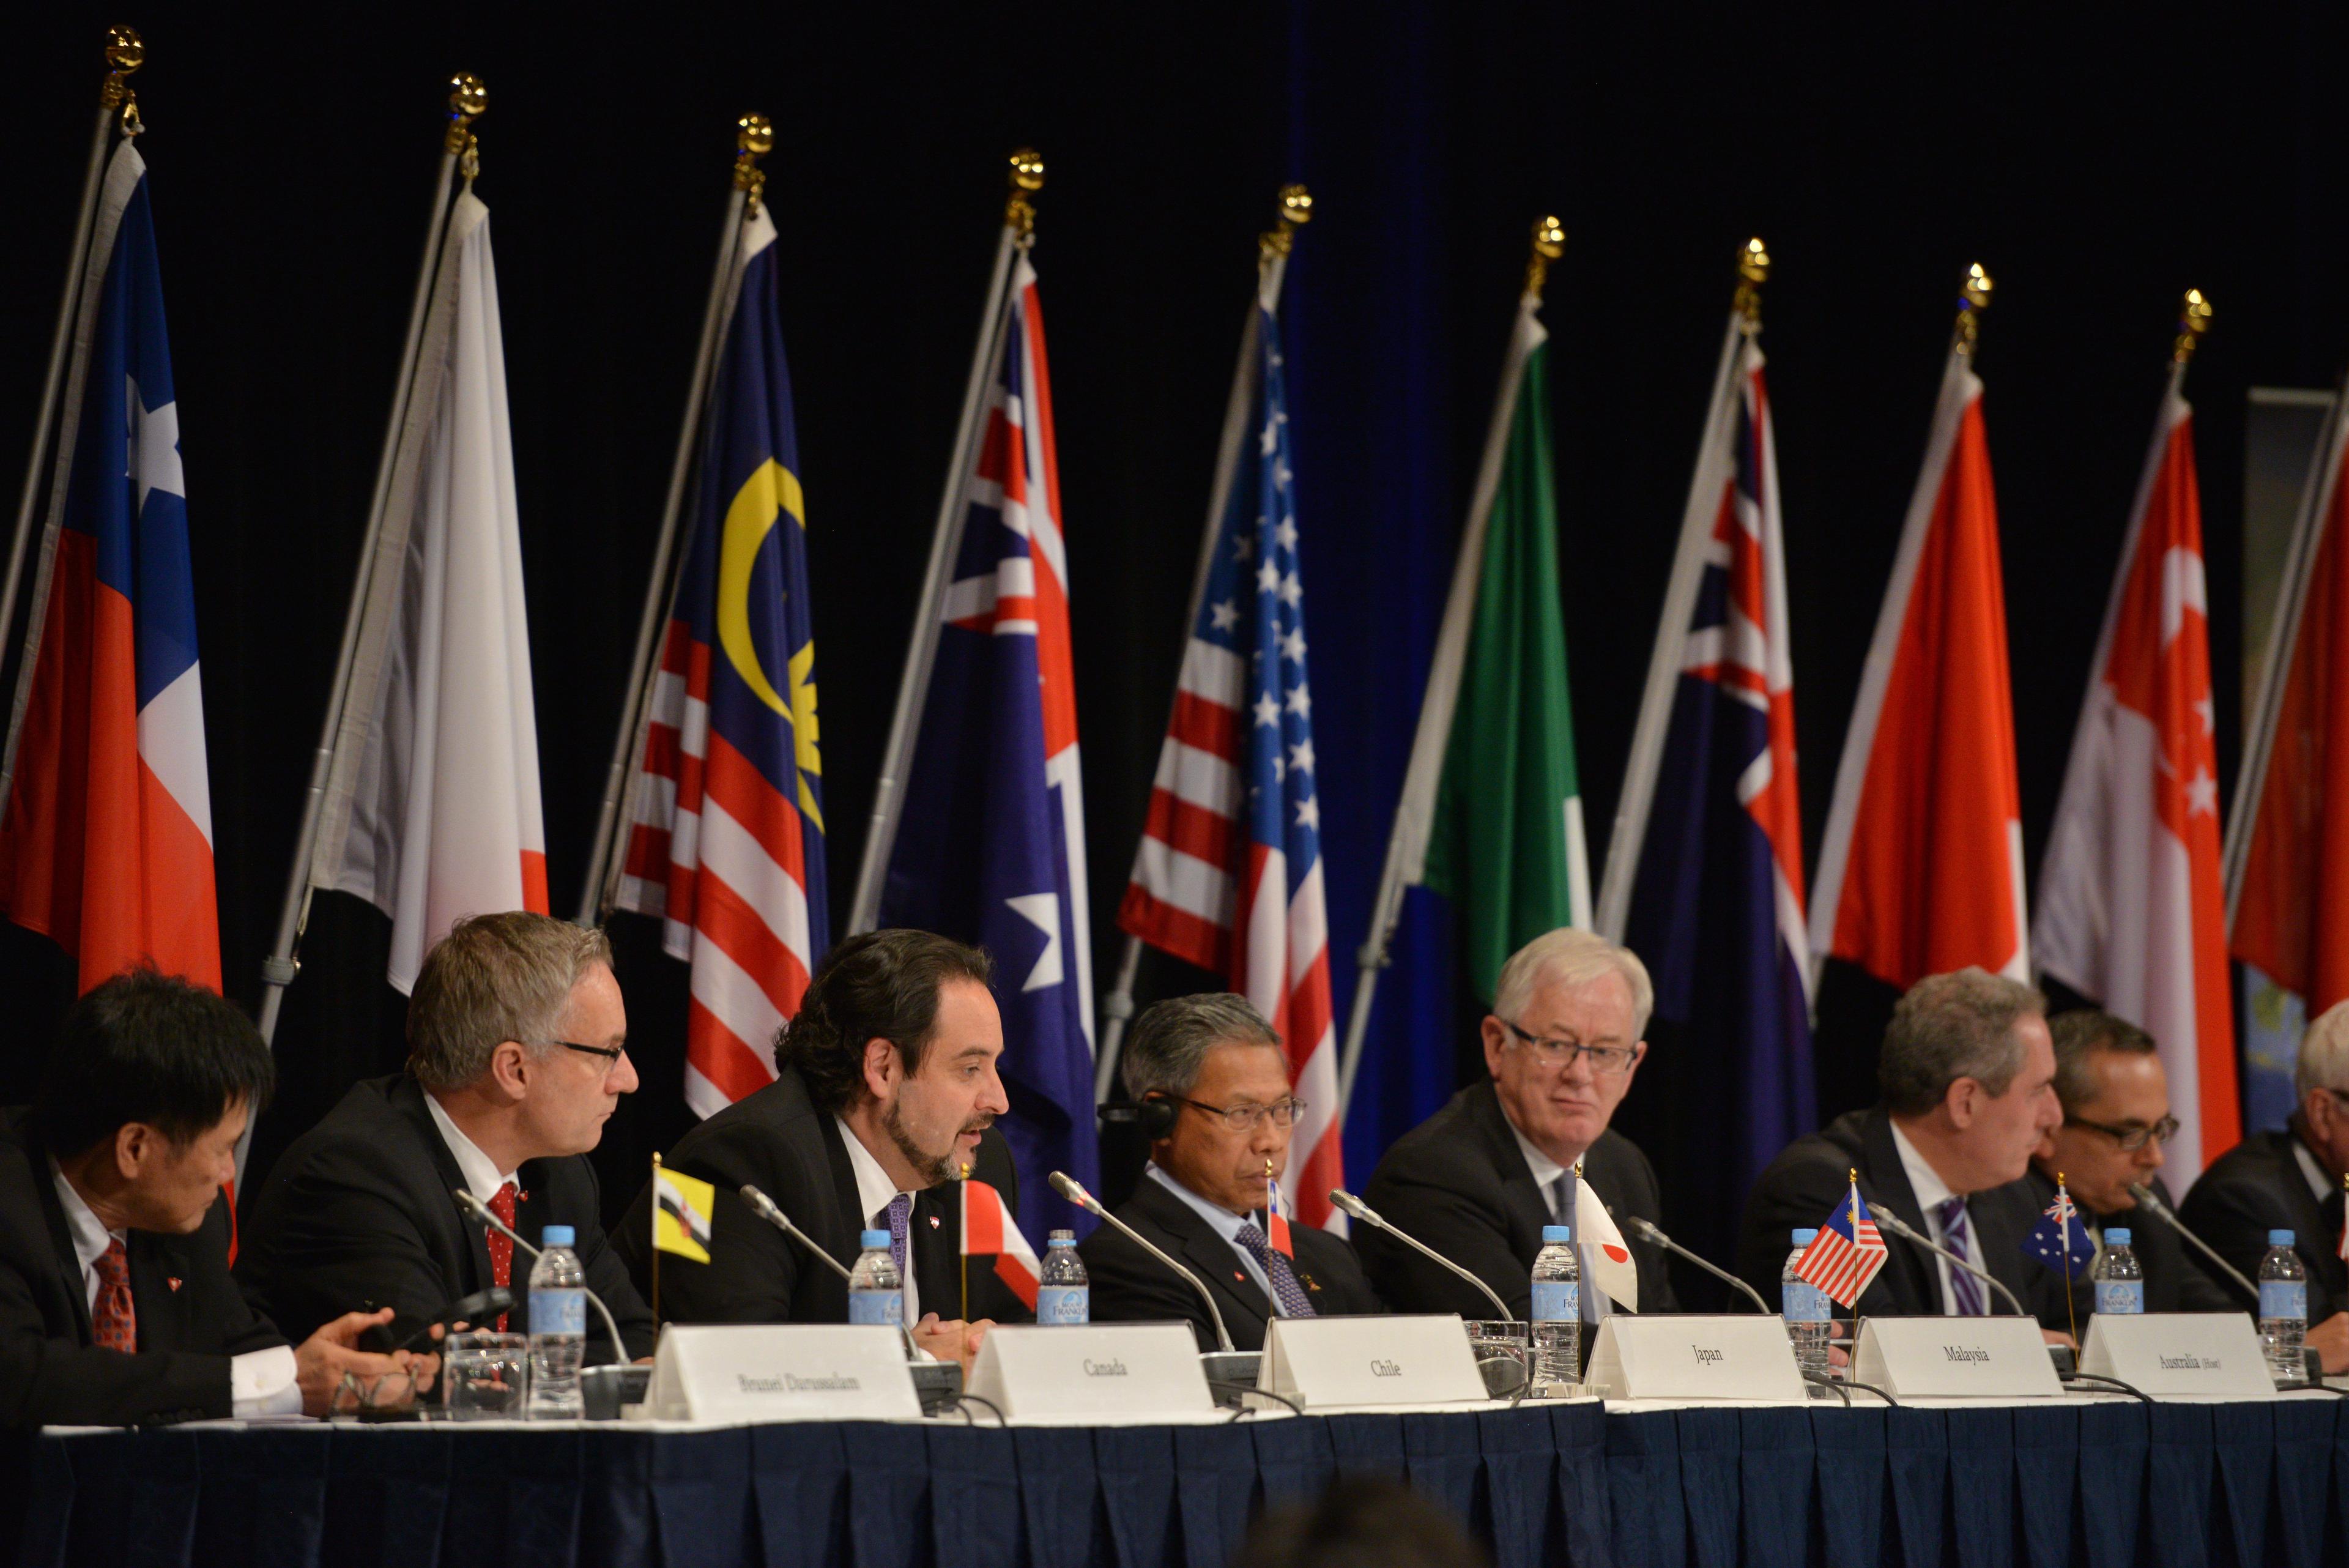 Bilden är från ett tidigare möte, den 27 oktober 2014, med de 12 länderna som omfattas av Trans-Pacific Partnership, TPP. (Foto: Peter Parks /AFP/Getty Images)